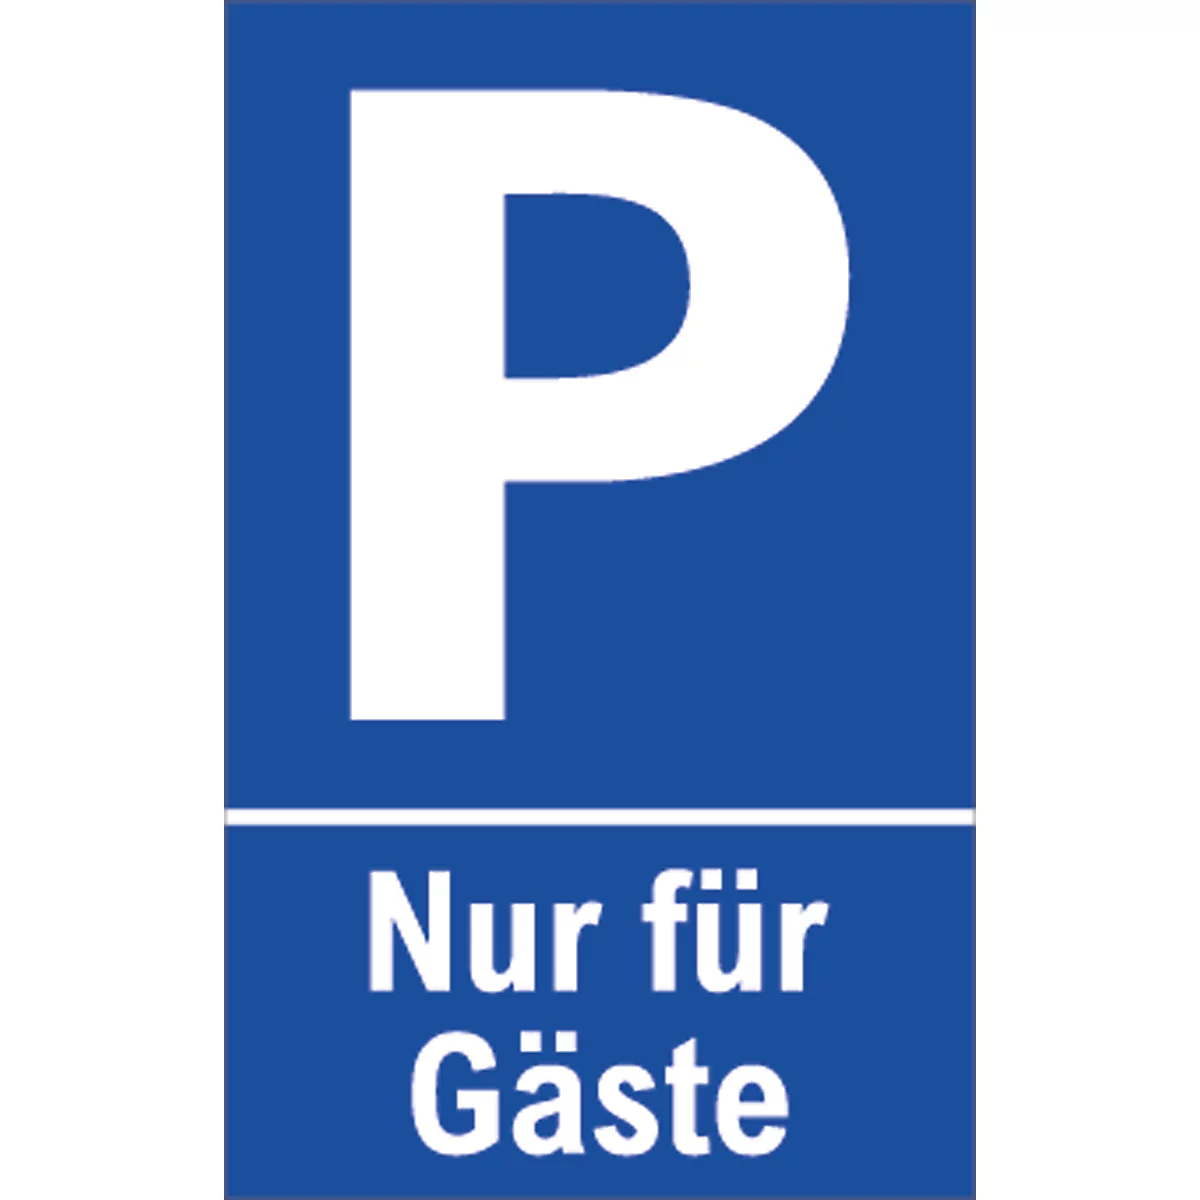 Señal de aparcamiento, "Nur für Gäste"